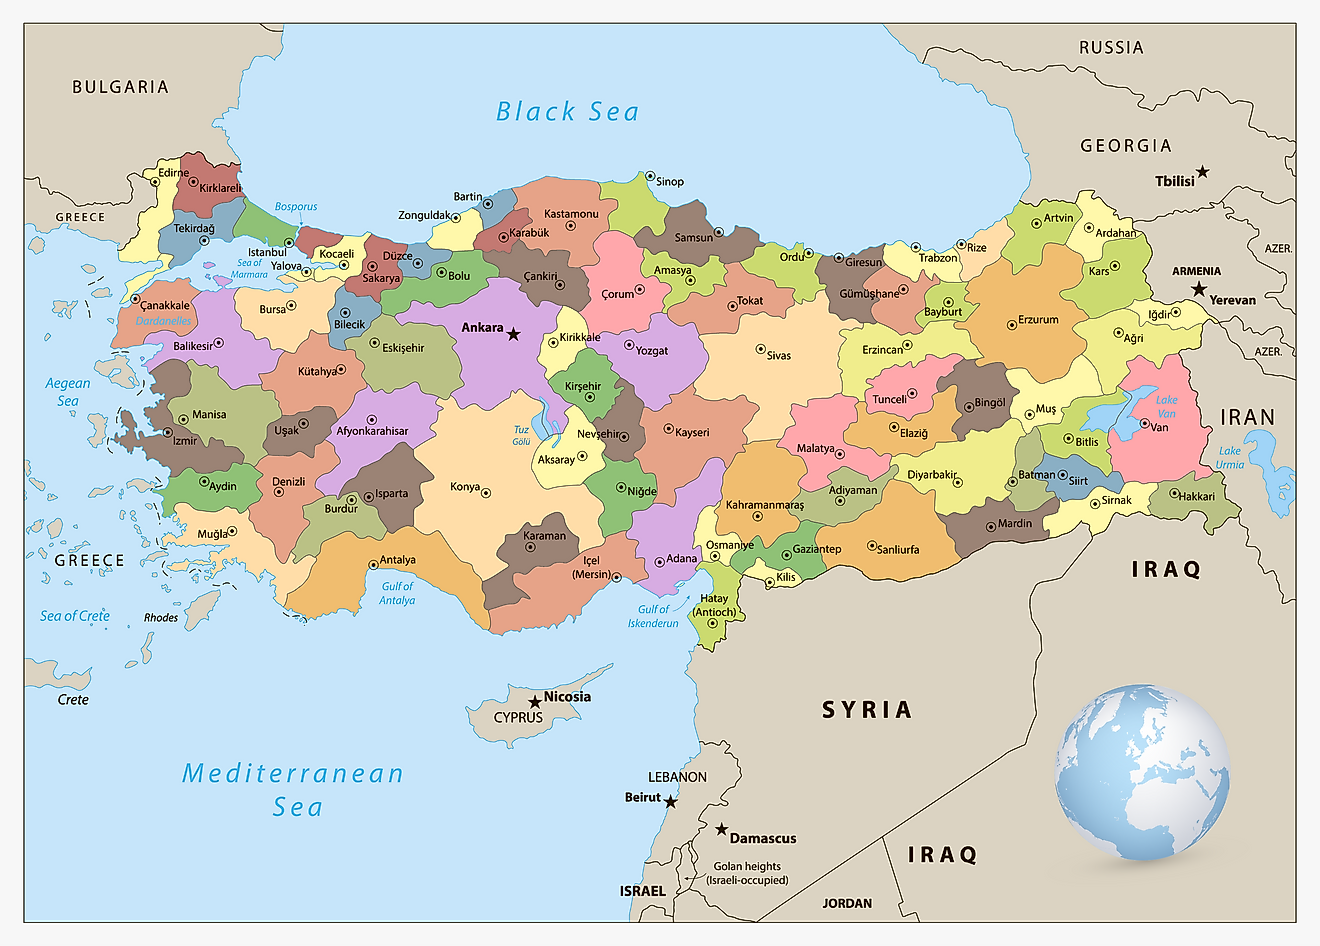 Mapa político de Turquía que muestra las 81 provincias de Turquía y la ciudad capital de Ankara.